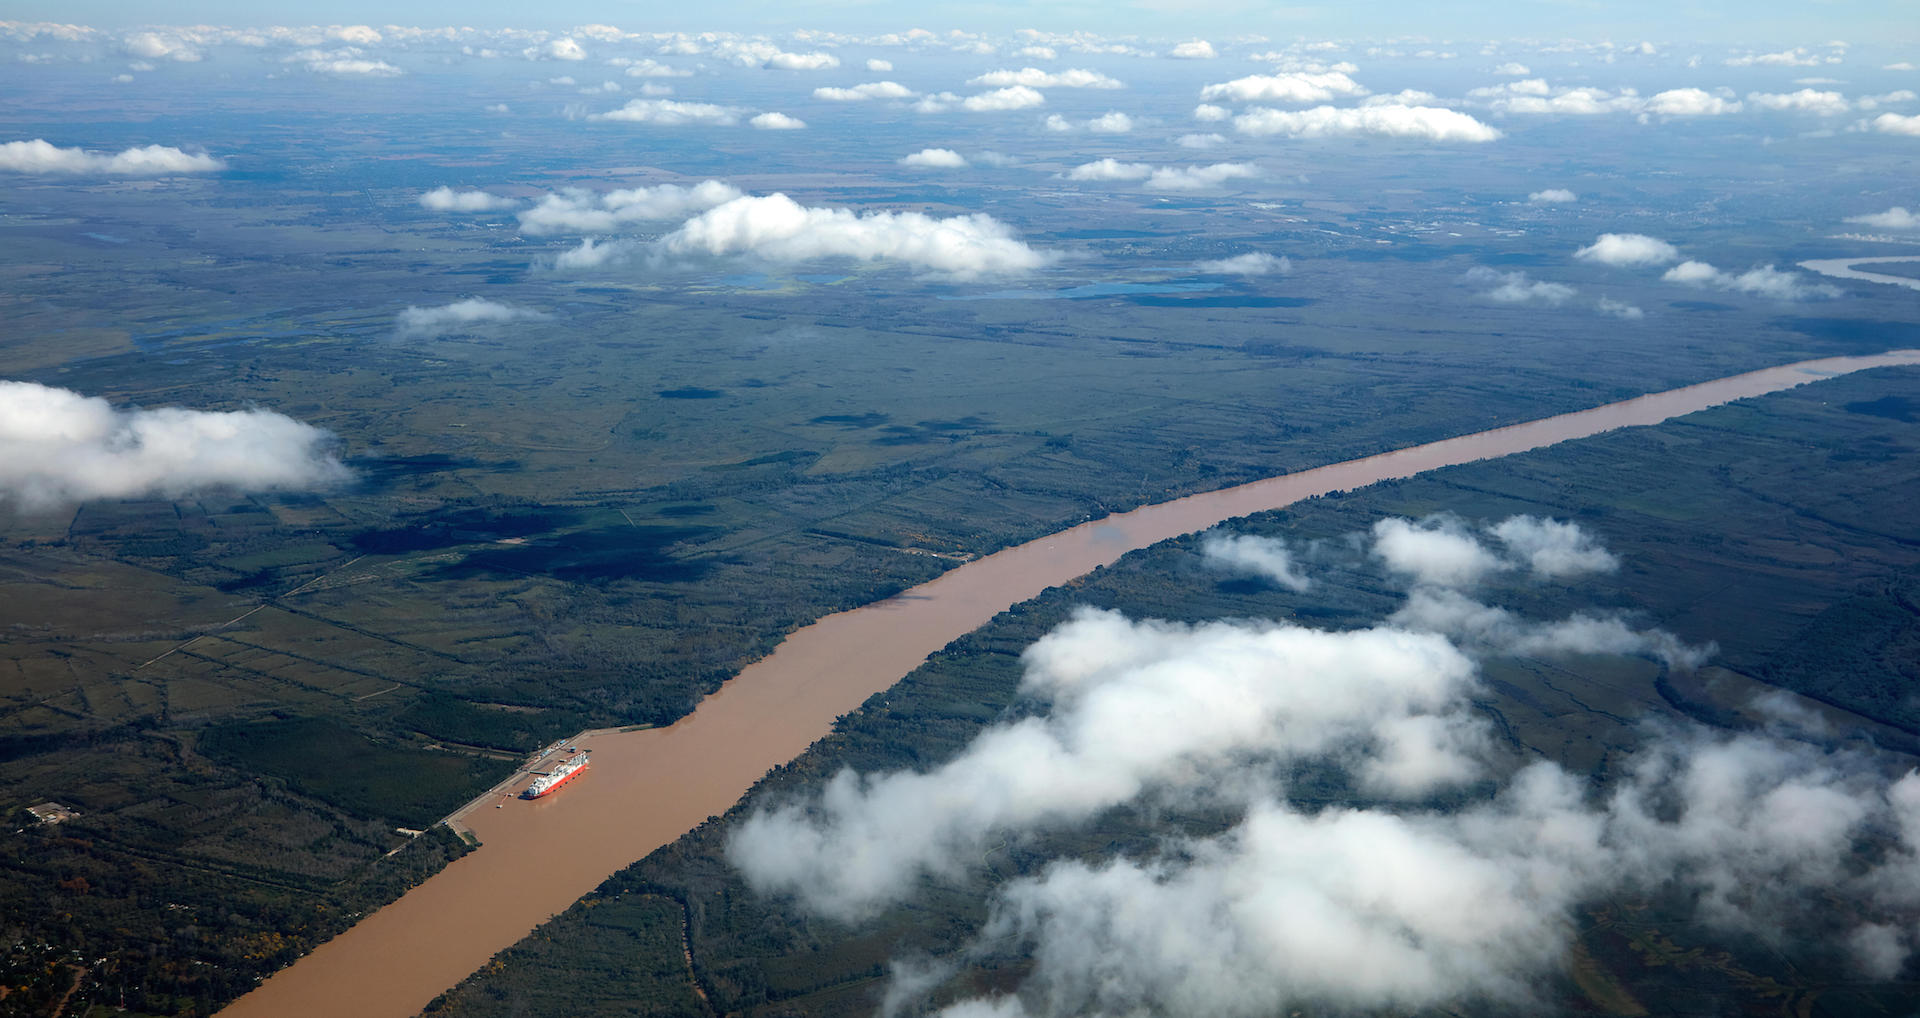 Paraná River aerial view